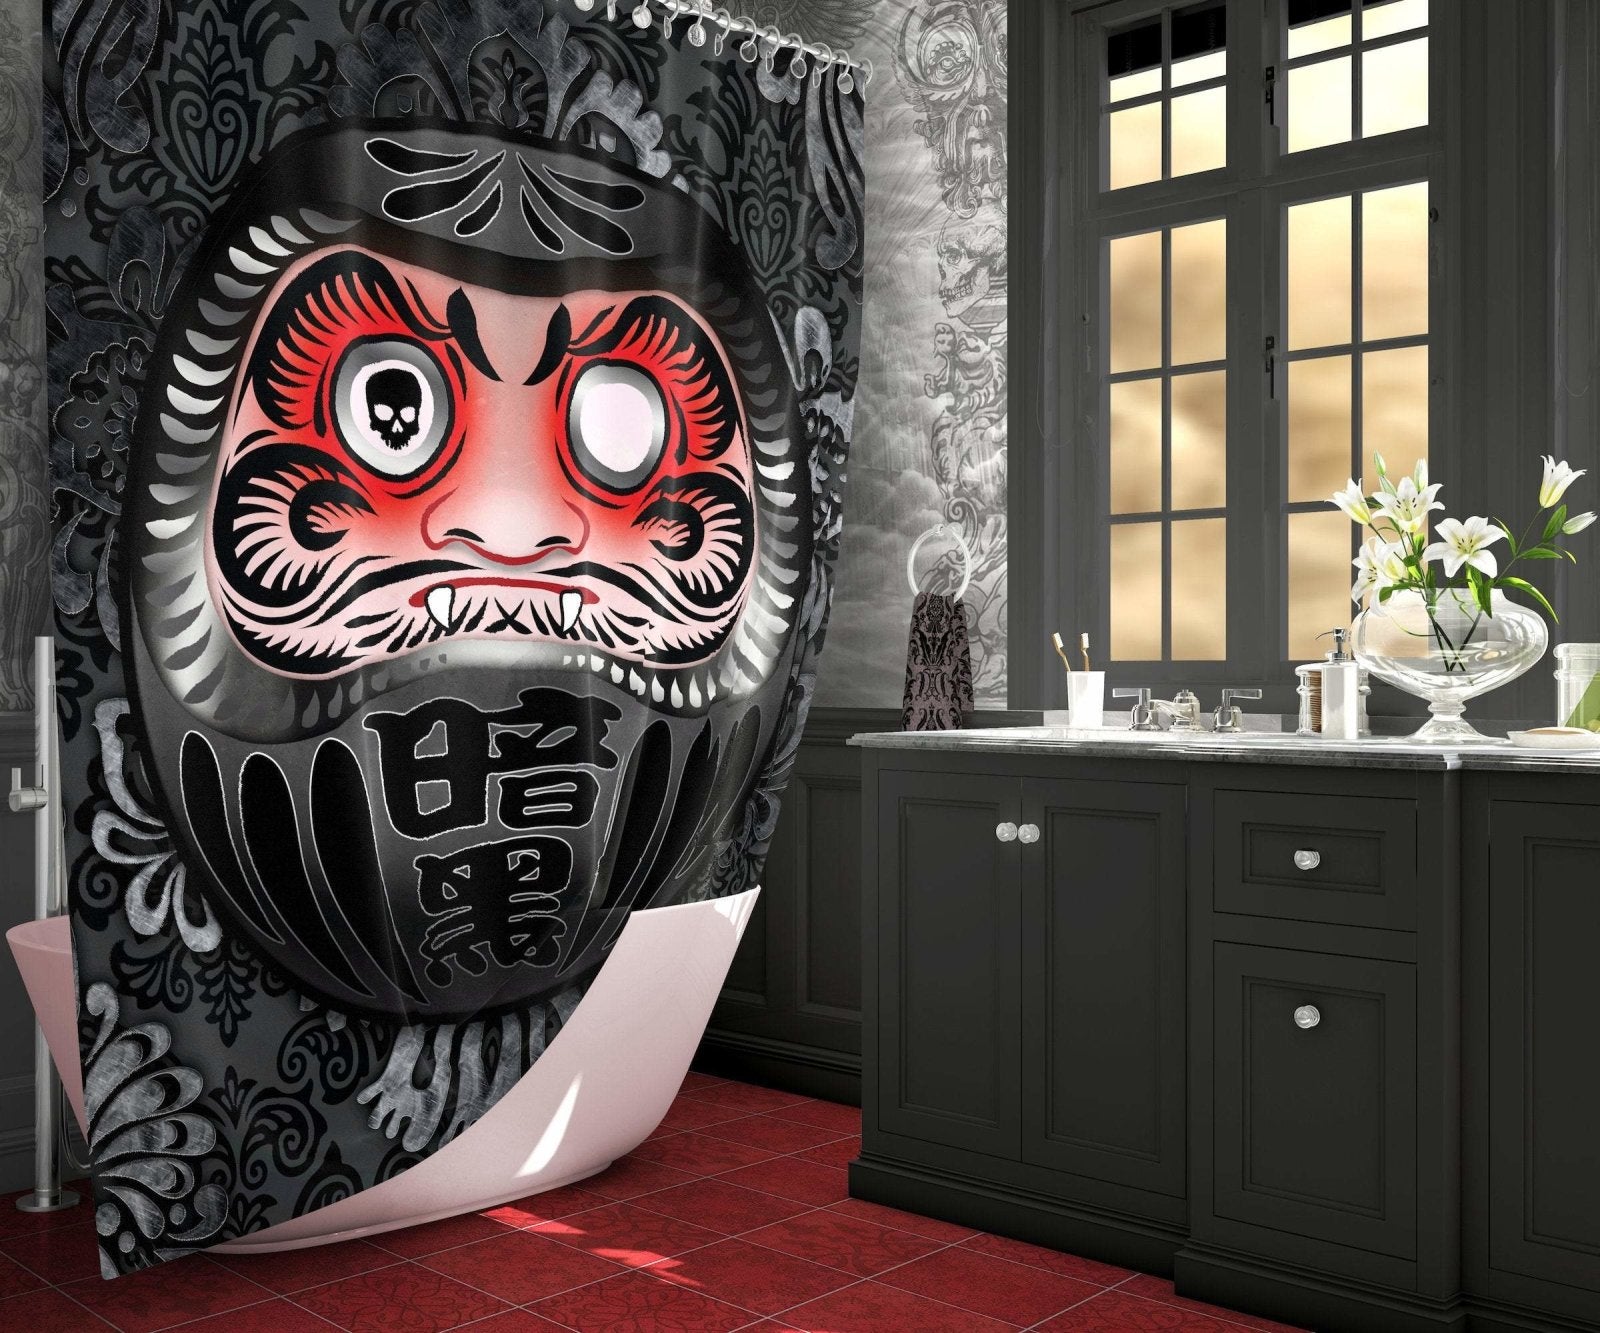 Daruma Shower Curtain, Japanese, Gothic Bathroom Decor, Anime, Funny Decor - Black, Goth - Abysm Internal